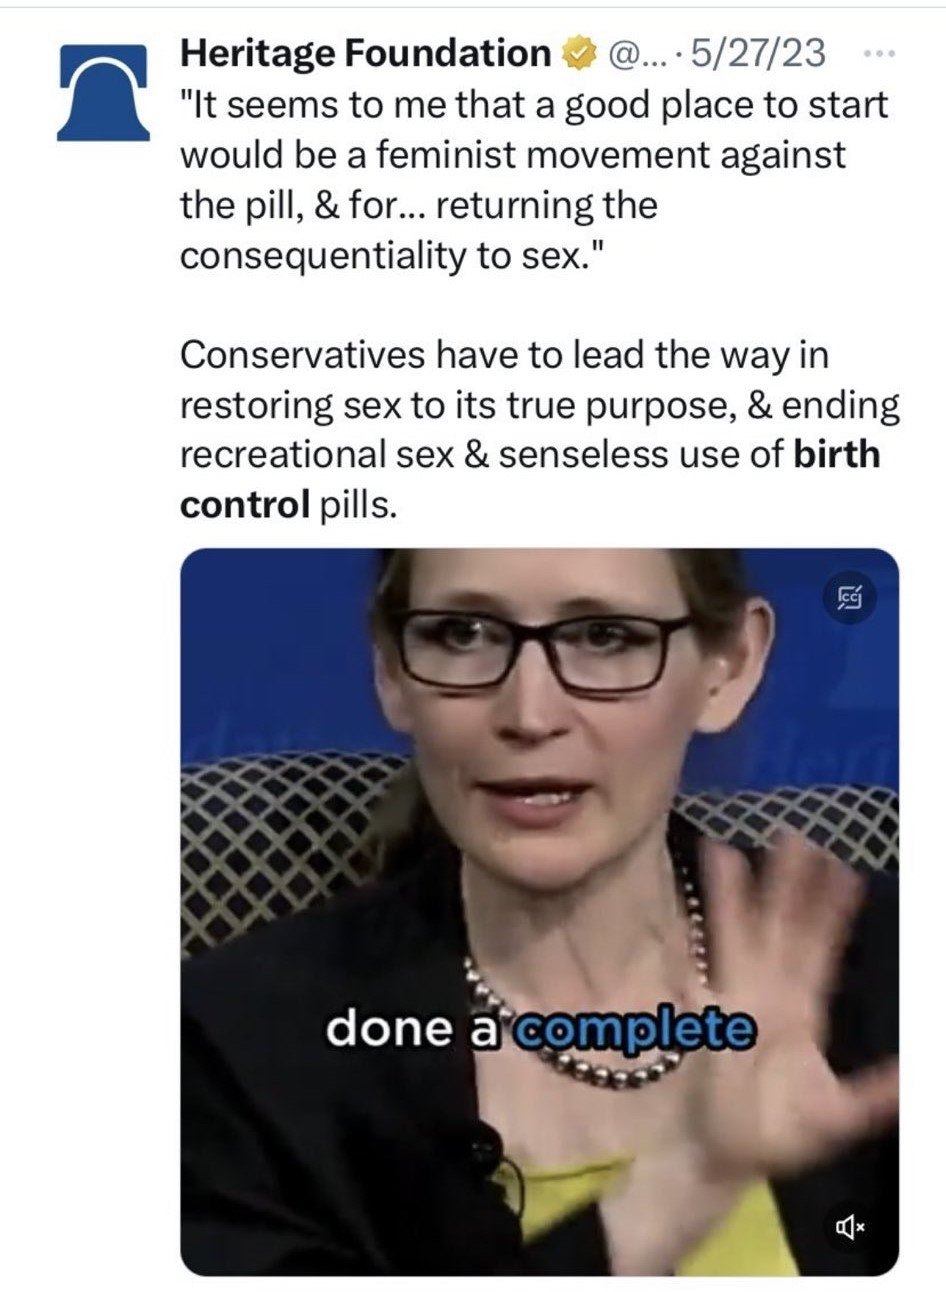 birth-control.jpg